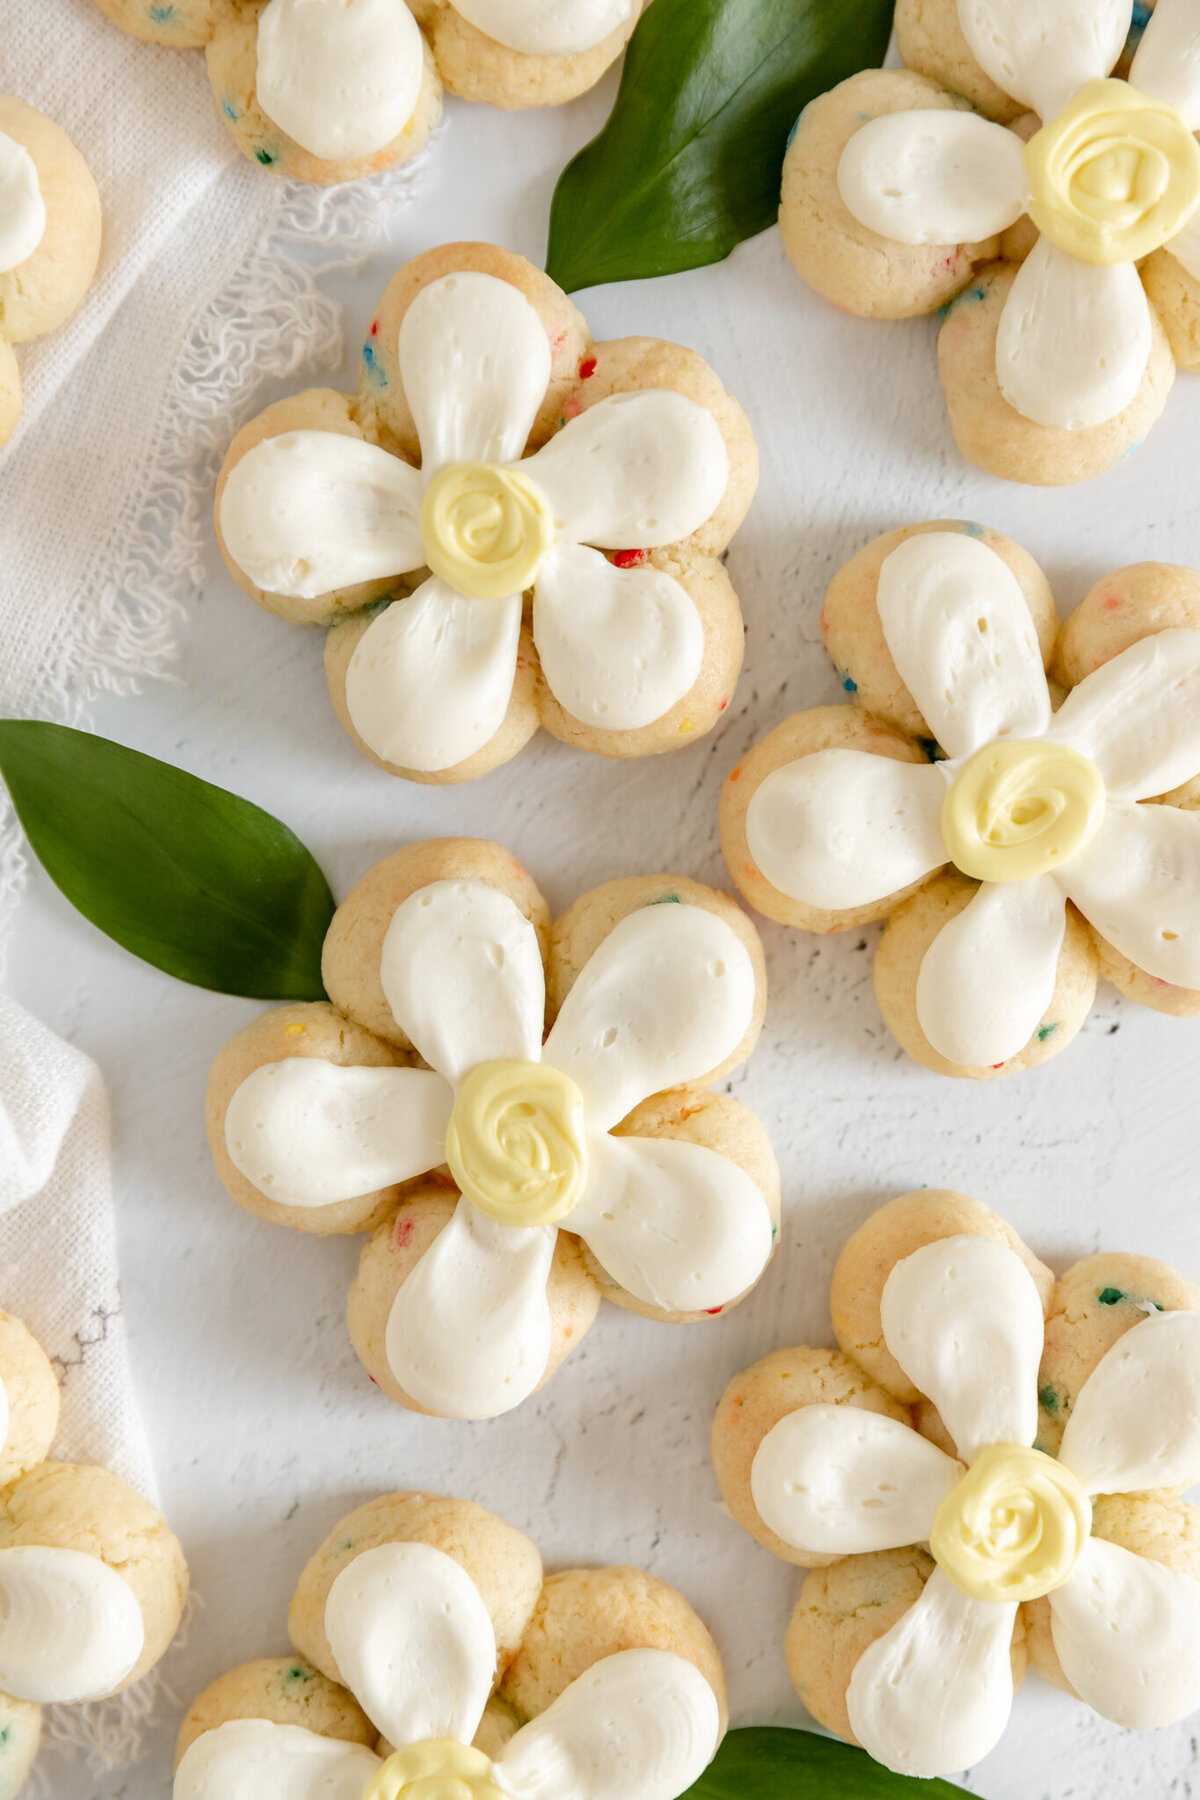 flower shaped cookies